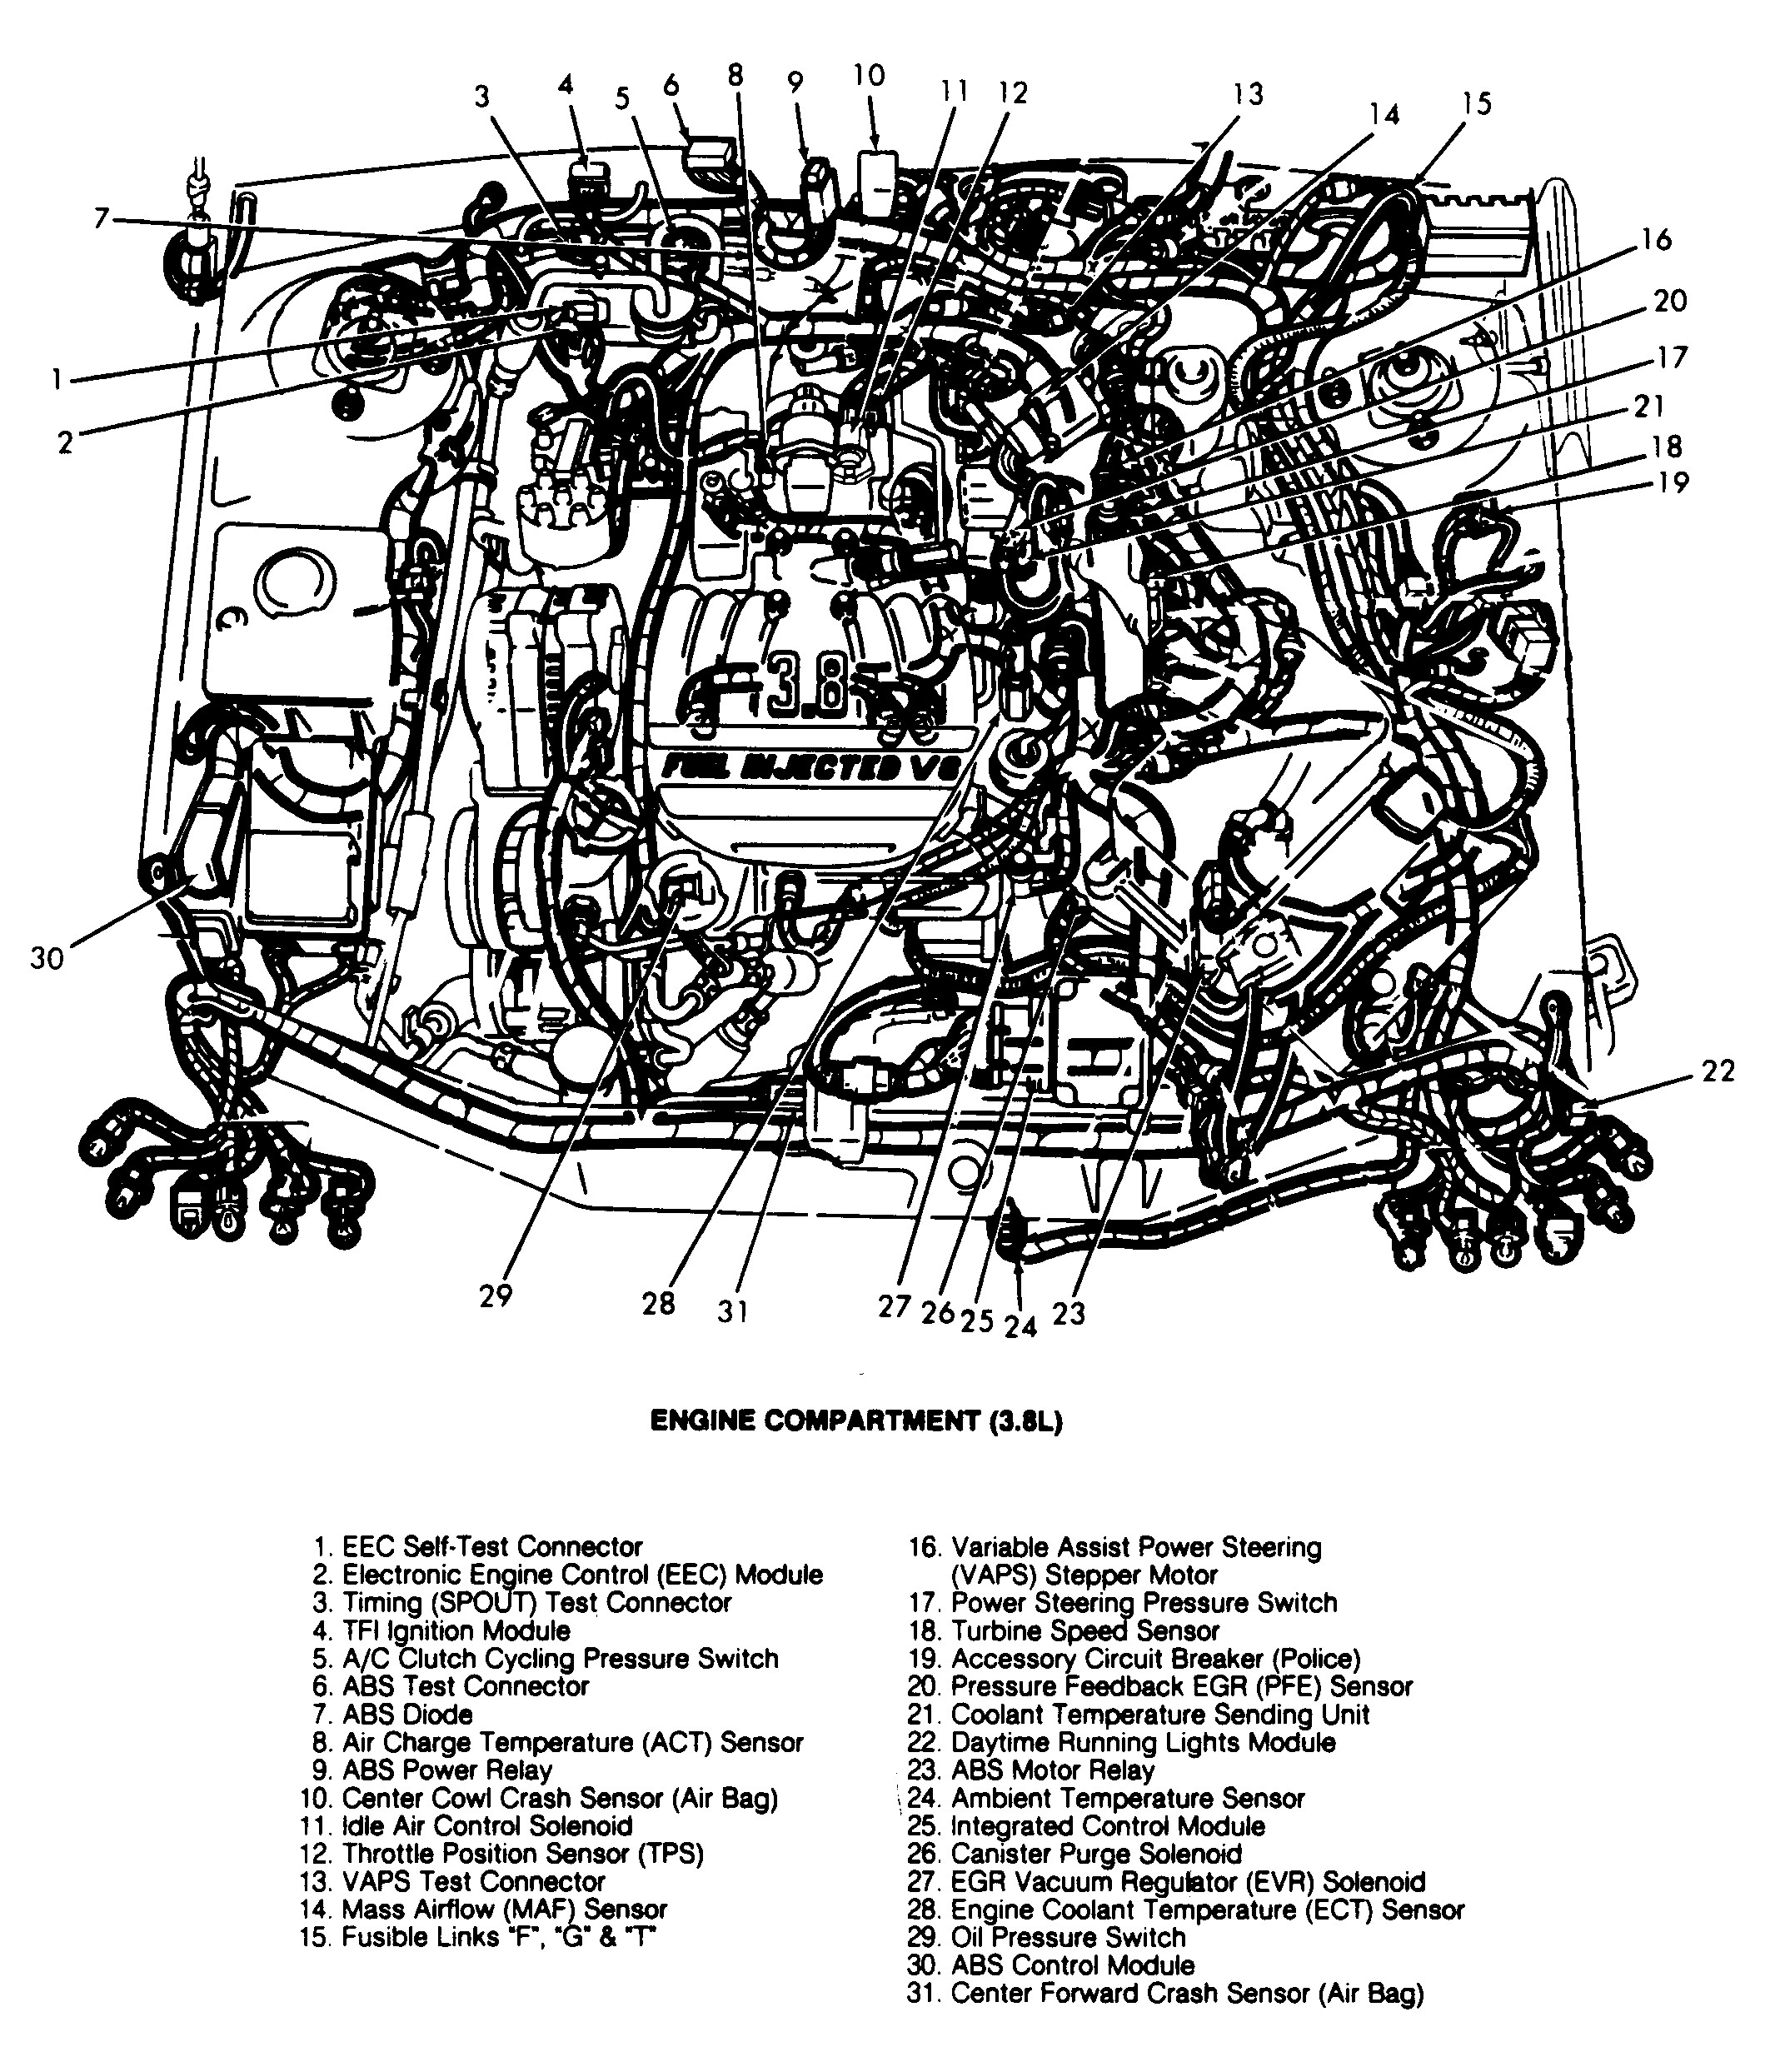 Mercury Sable Engine Diagram ford Taurus Engine Diagram Wiring for Mercury Sable to Her with In Of Mercury Sable Engine Diagram